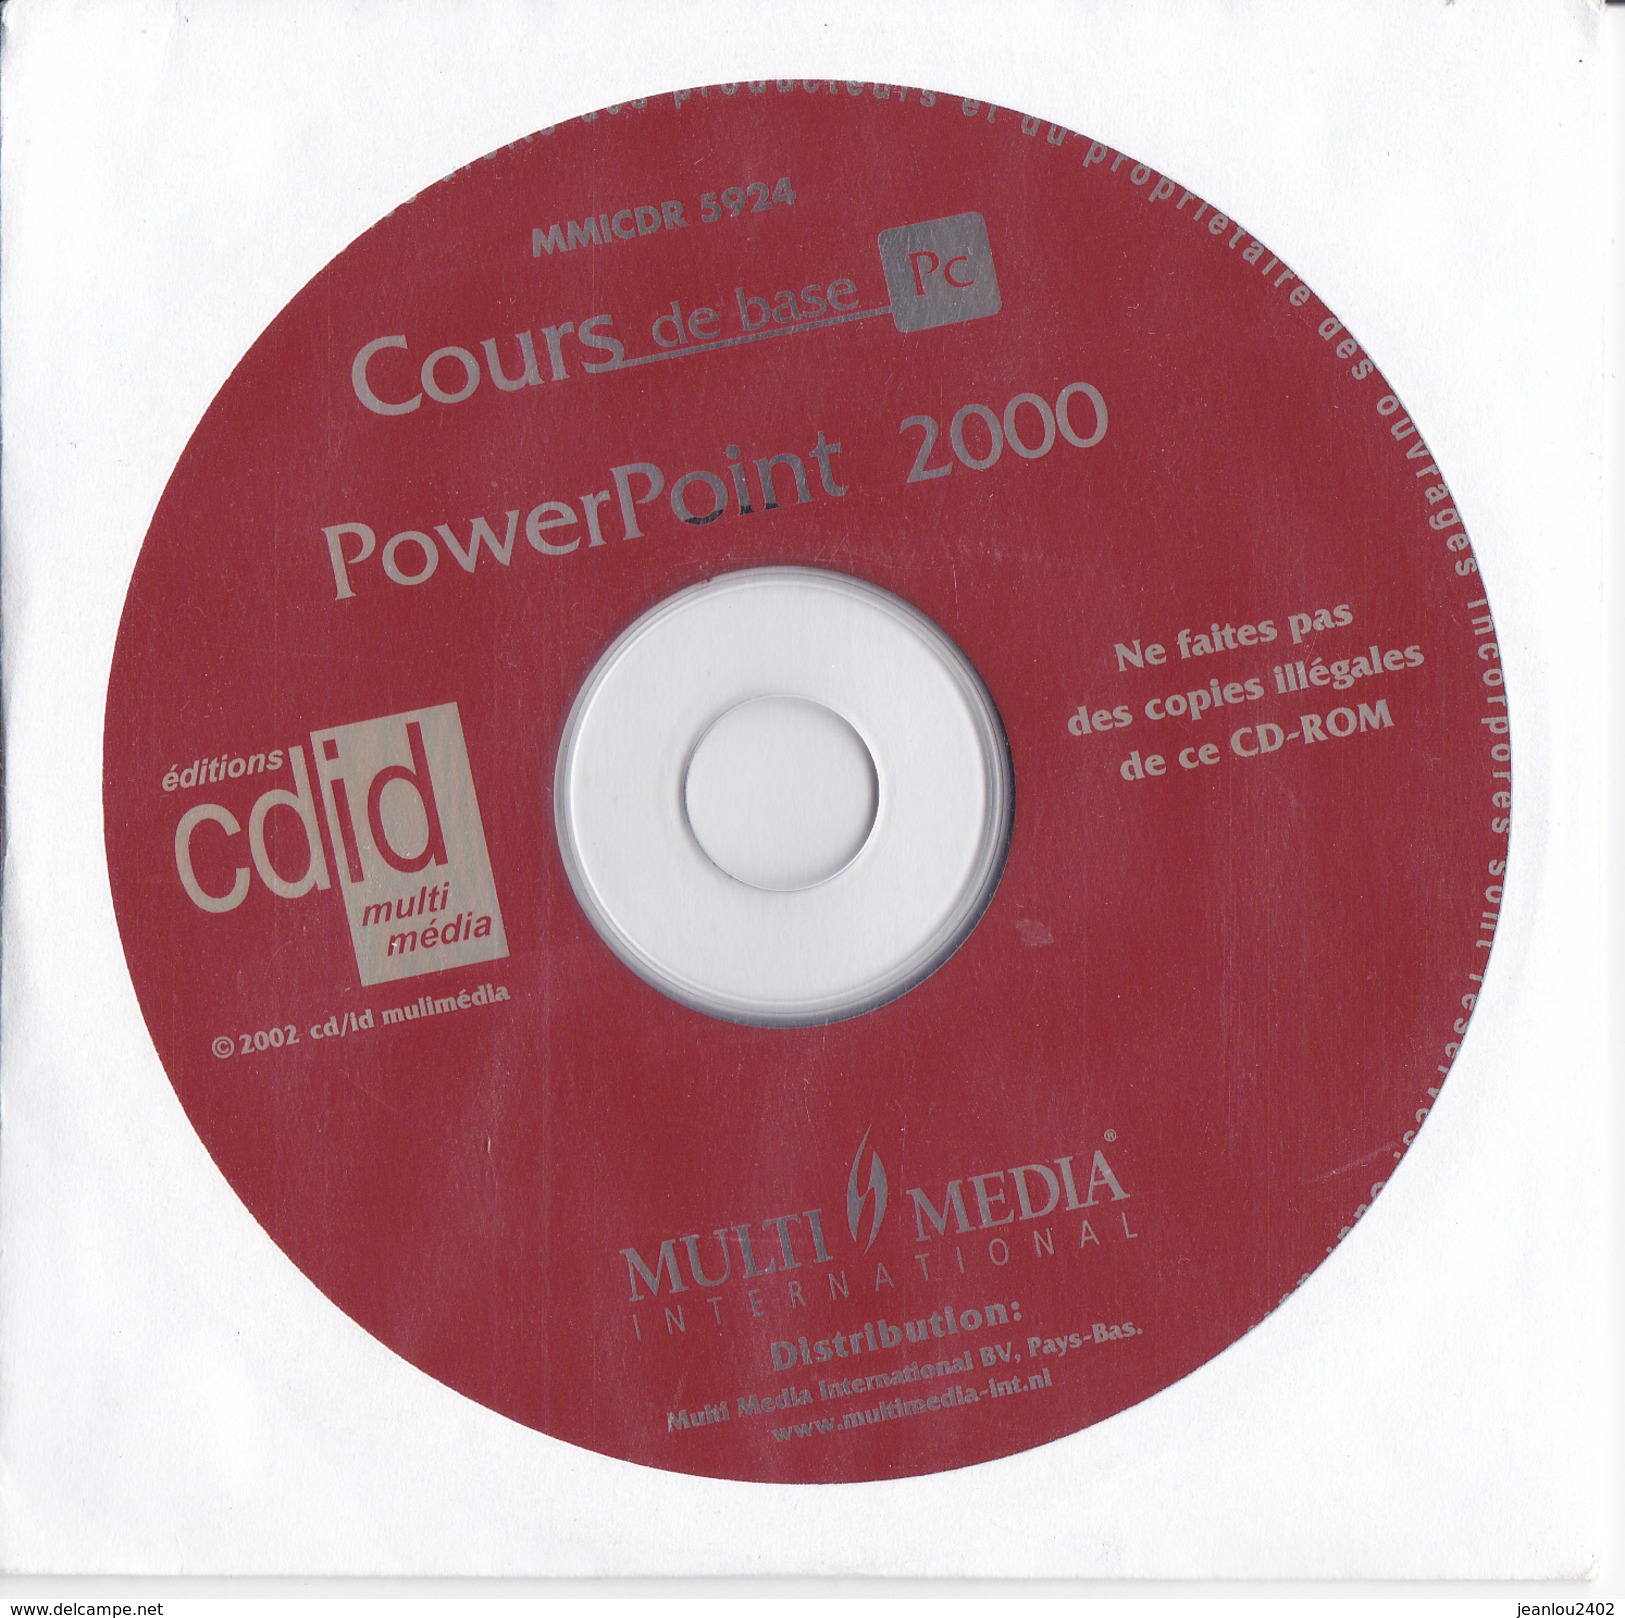 Cours De Base POWER POINT 2000 - CD